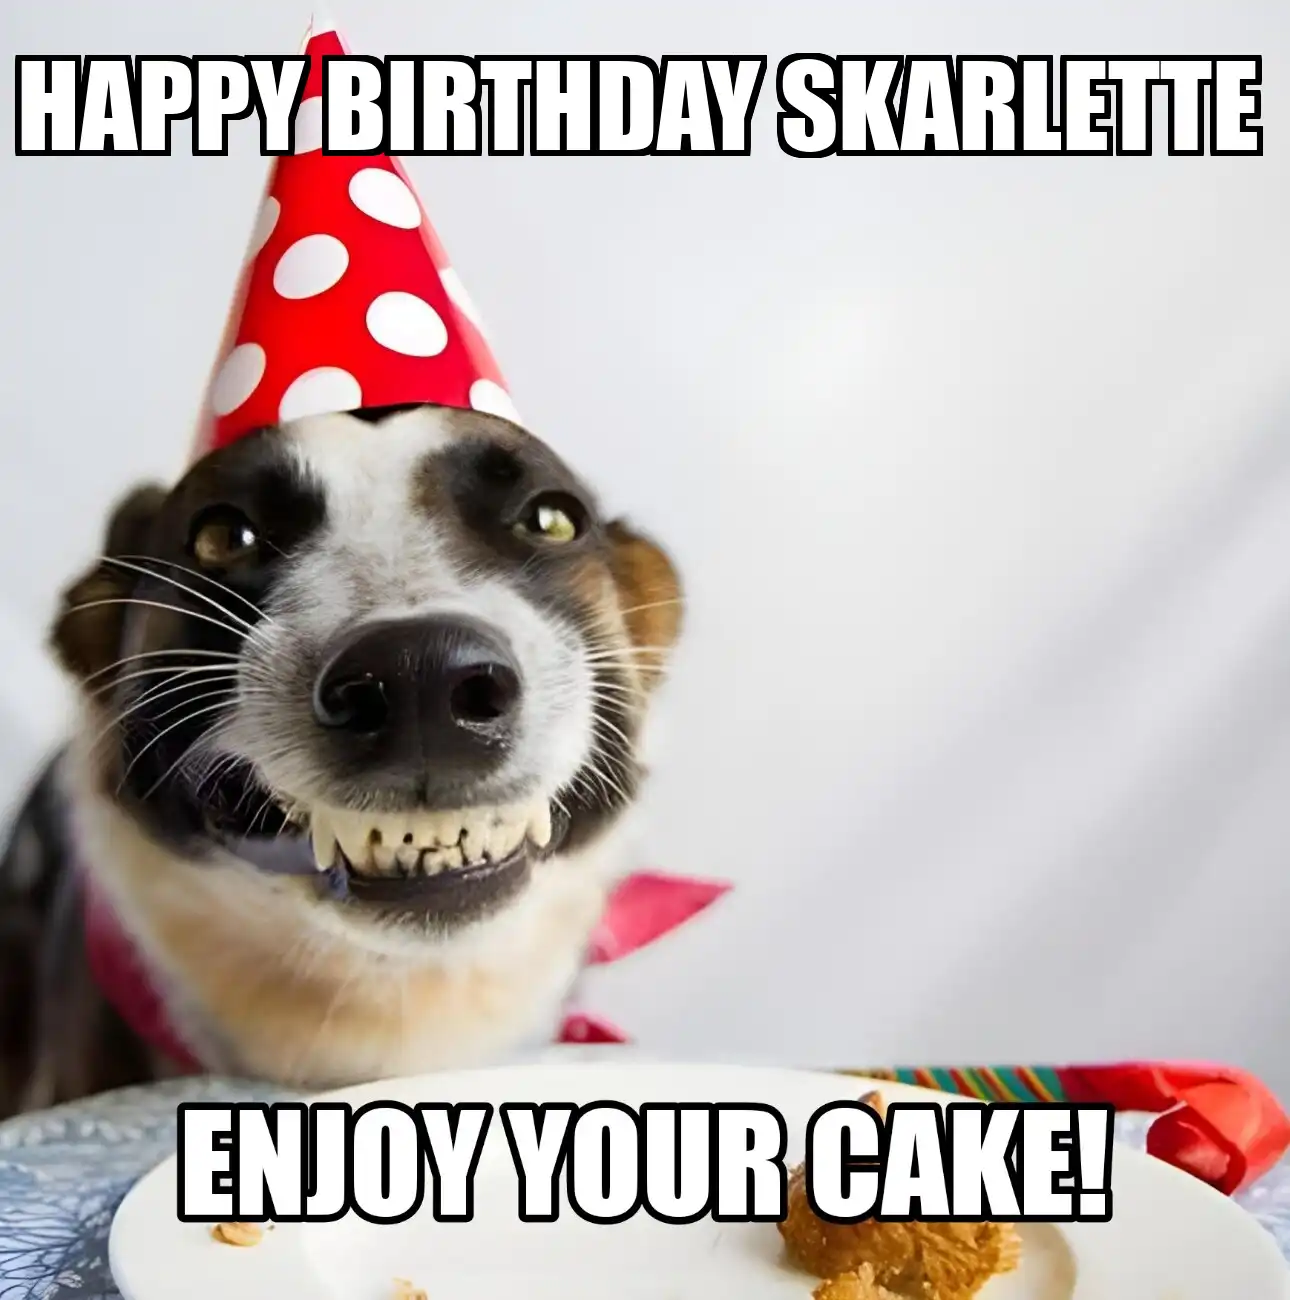 Happy Birthday Skarlette Enjoy Your Cake Dog Meme